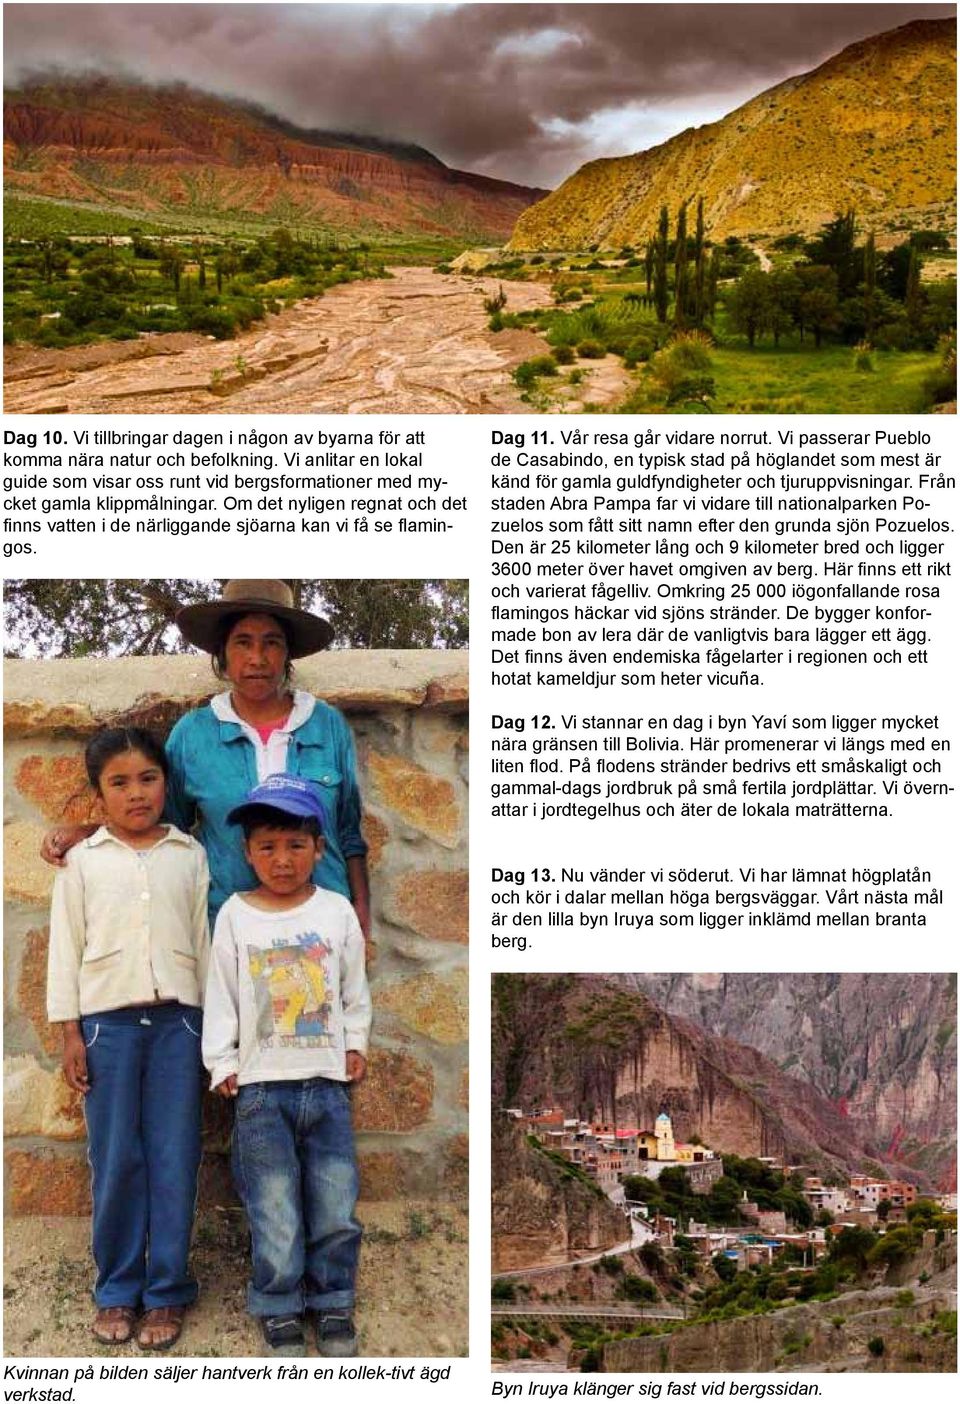 Vi passerar Pueblo de Casabindo, en typisk stad på höglandet som mest är känd för gamla guldfyndigheter och tjuruppvisningar.